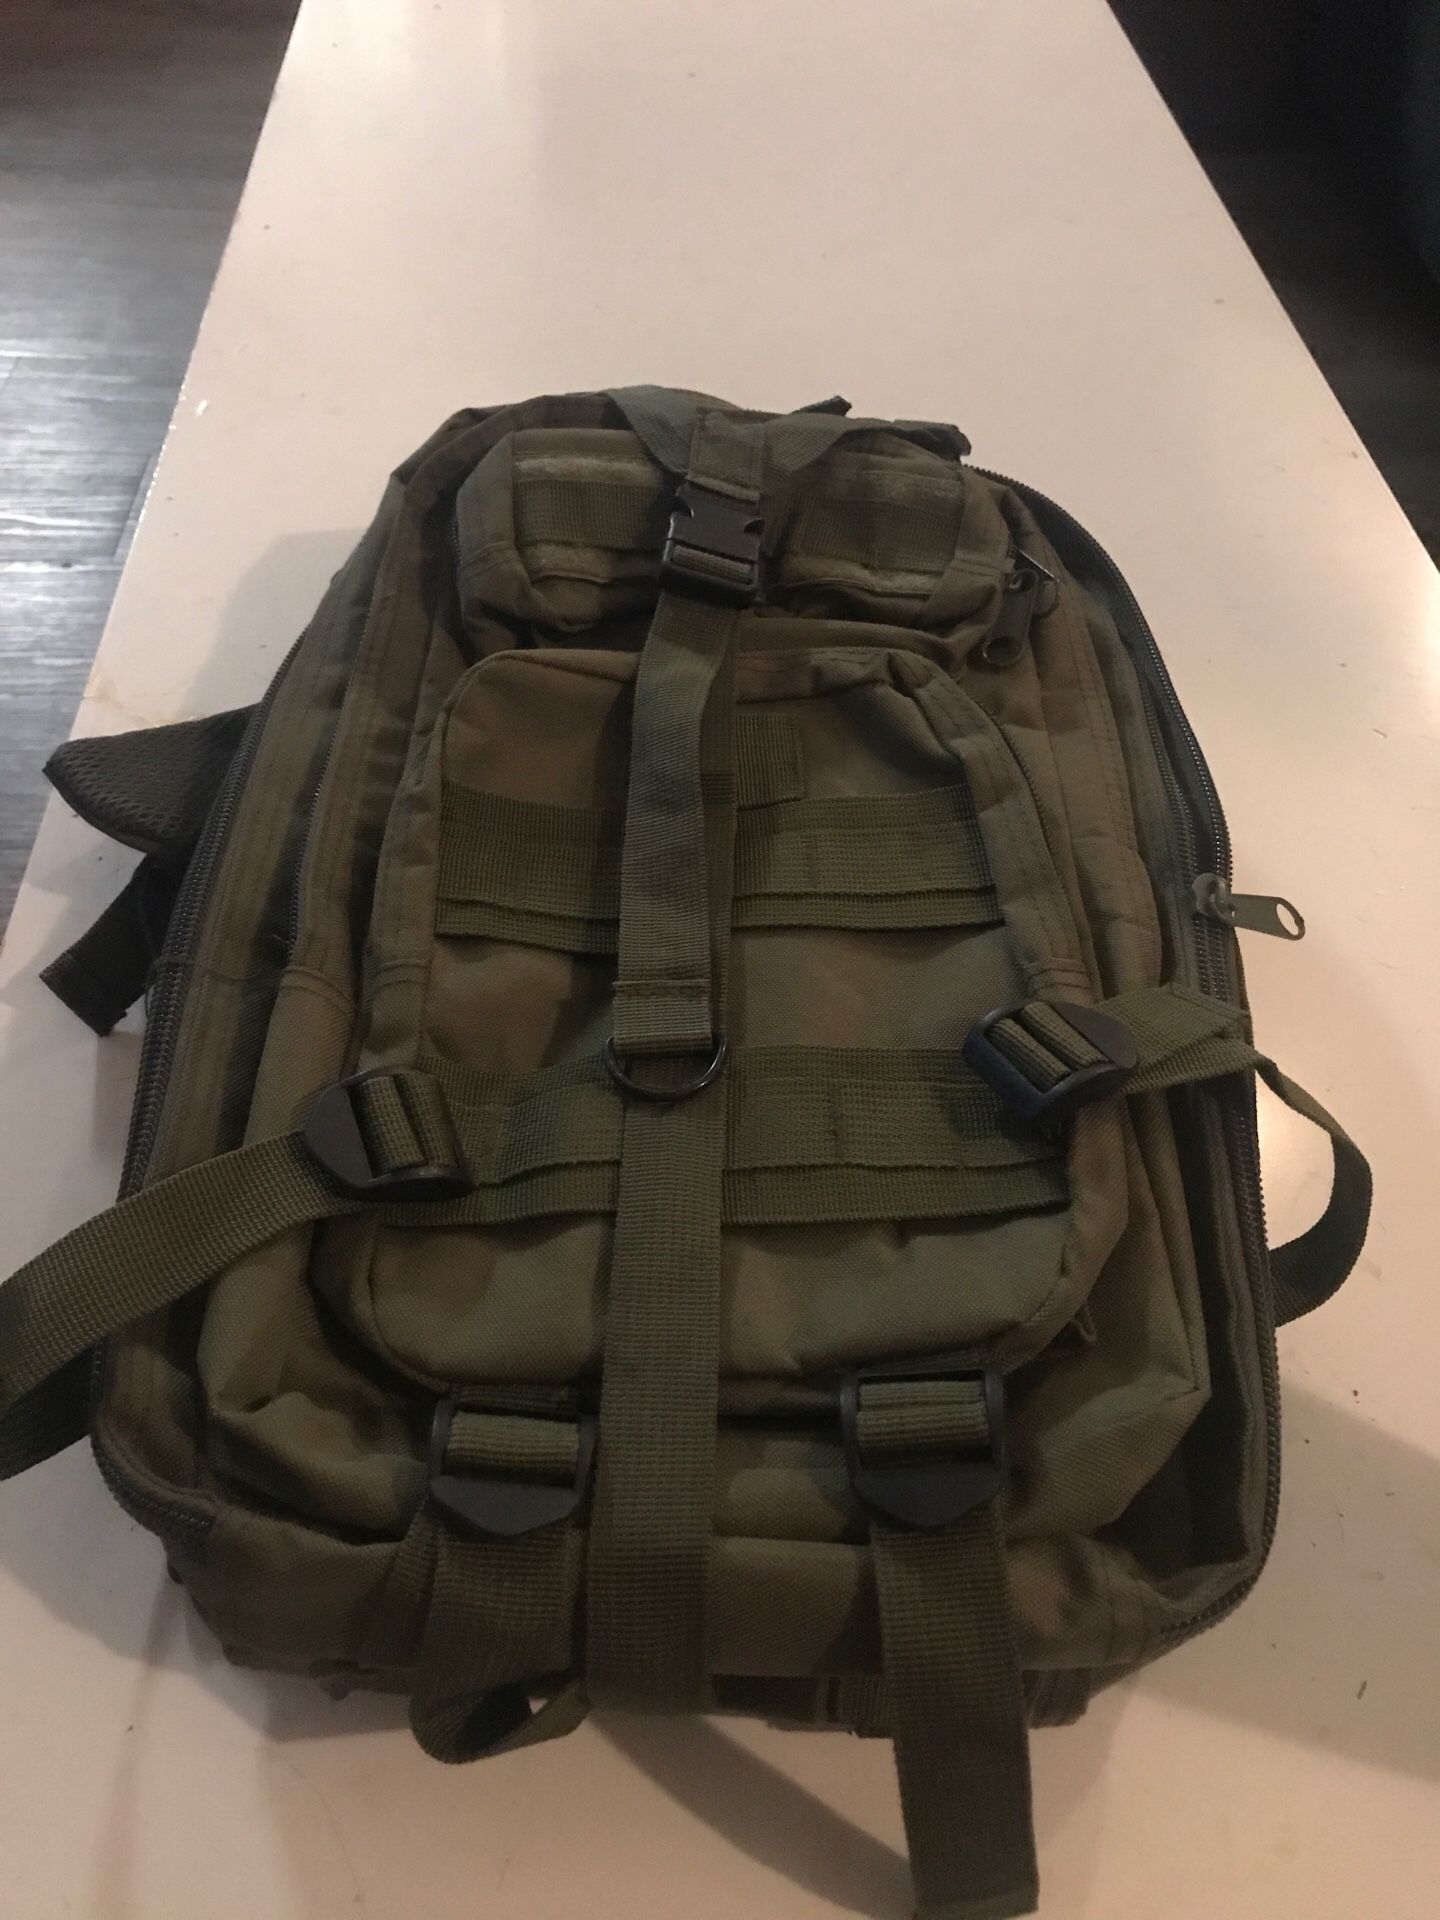 LIGHT weight tactical bag